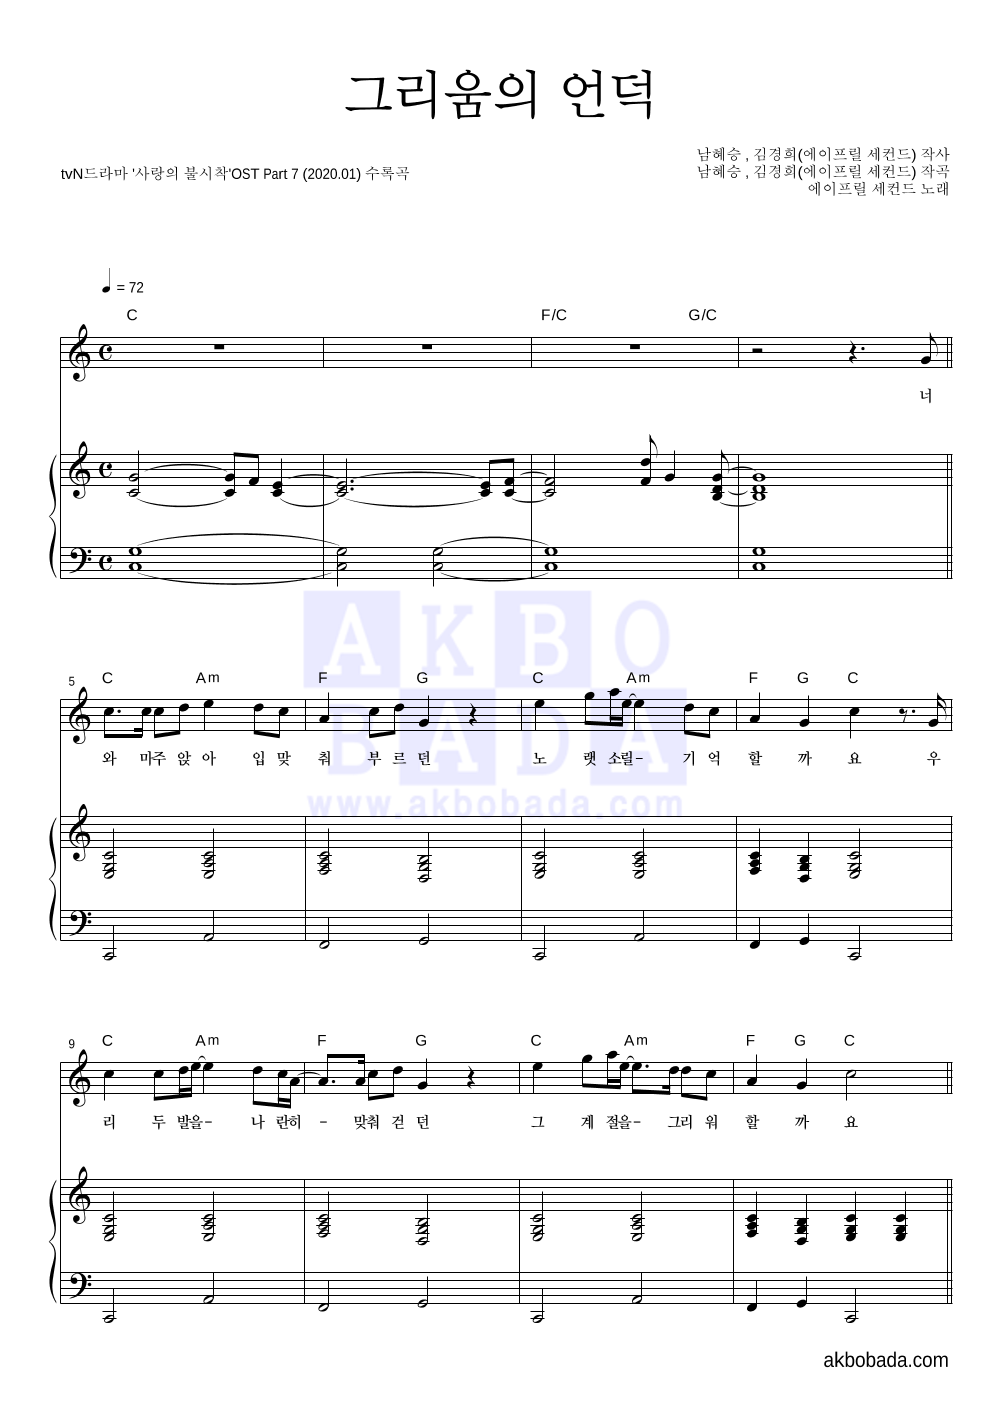 에이프릴 세컨드 - 그리움의 언덕 피아노 3단 악보 